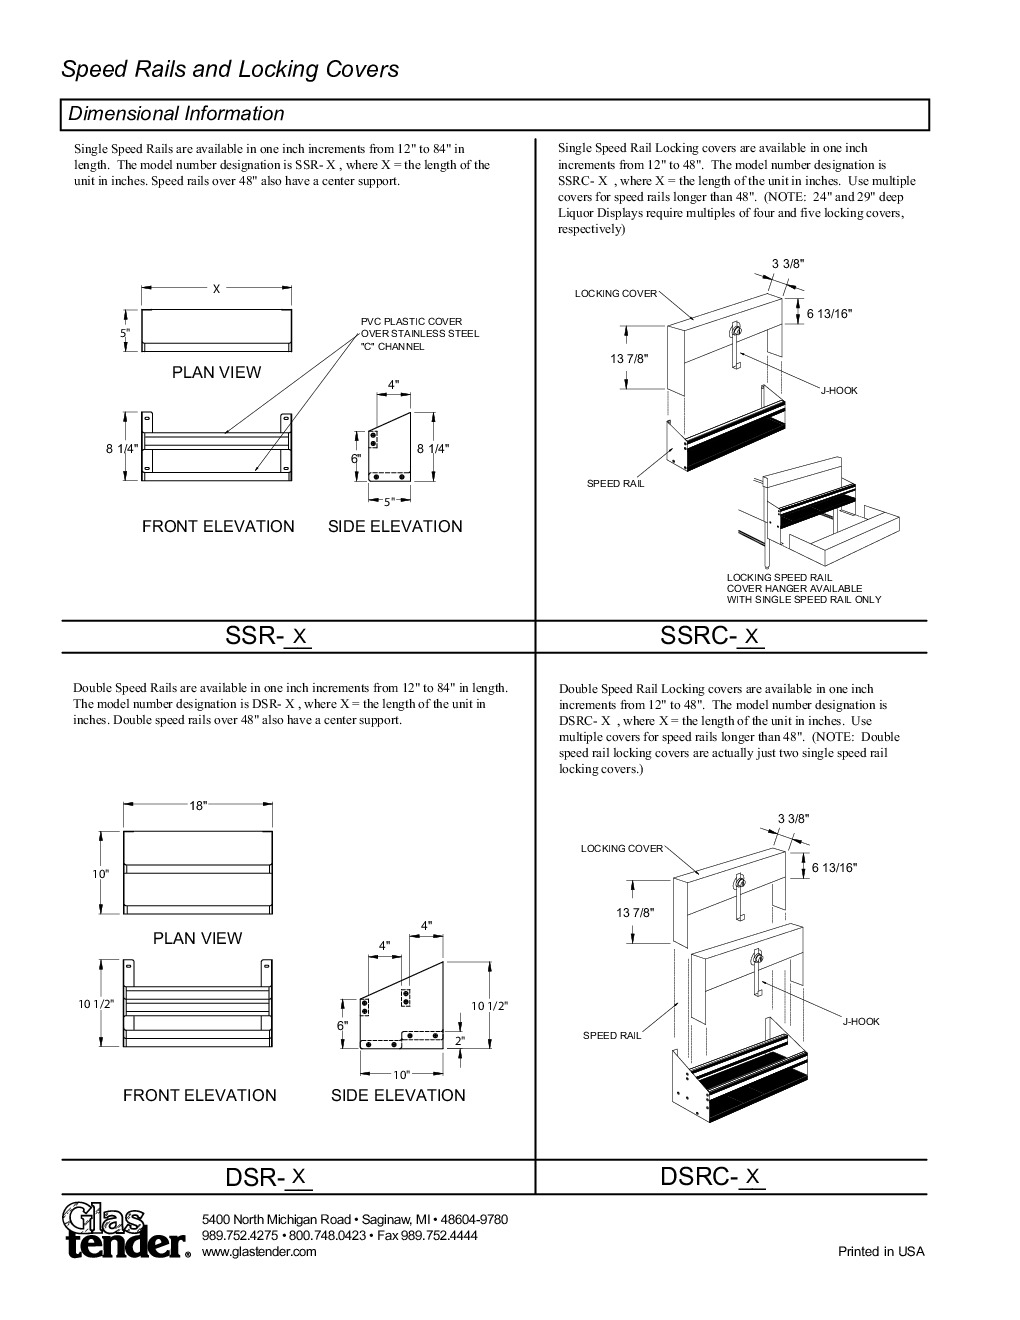 Glastender DSRC-28 Cover Speed Rail / Rack